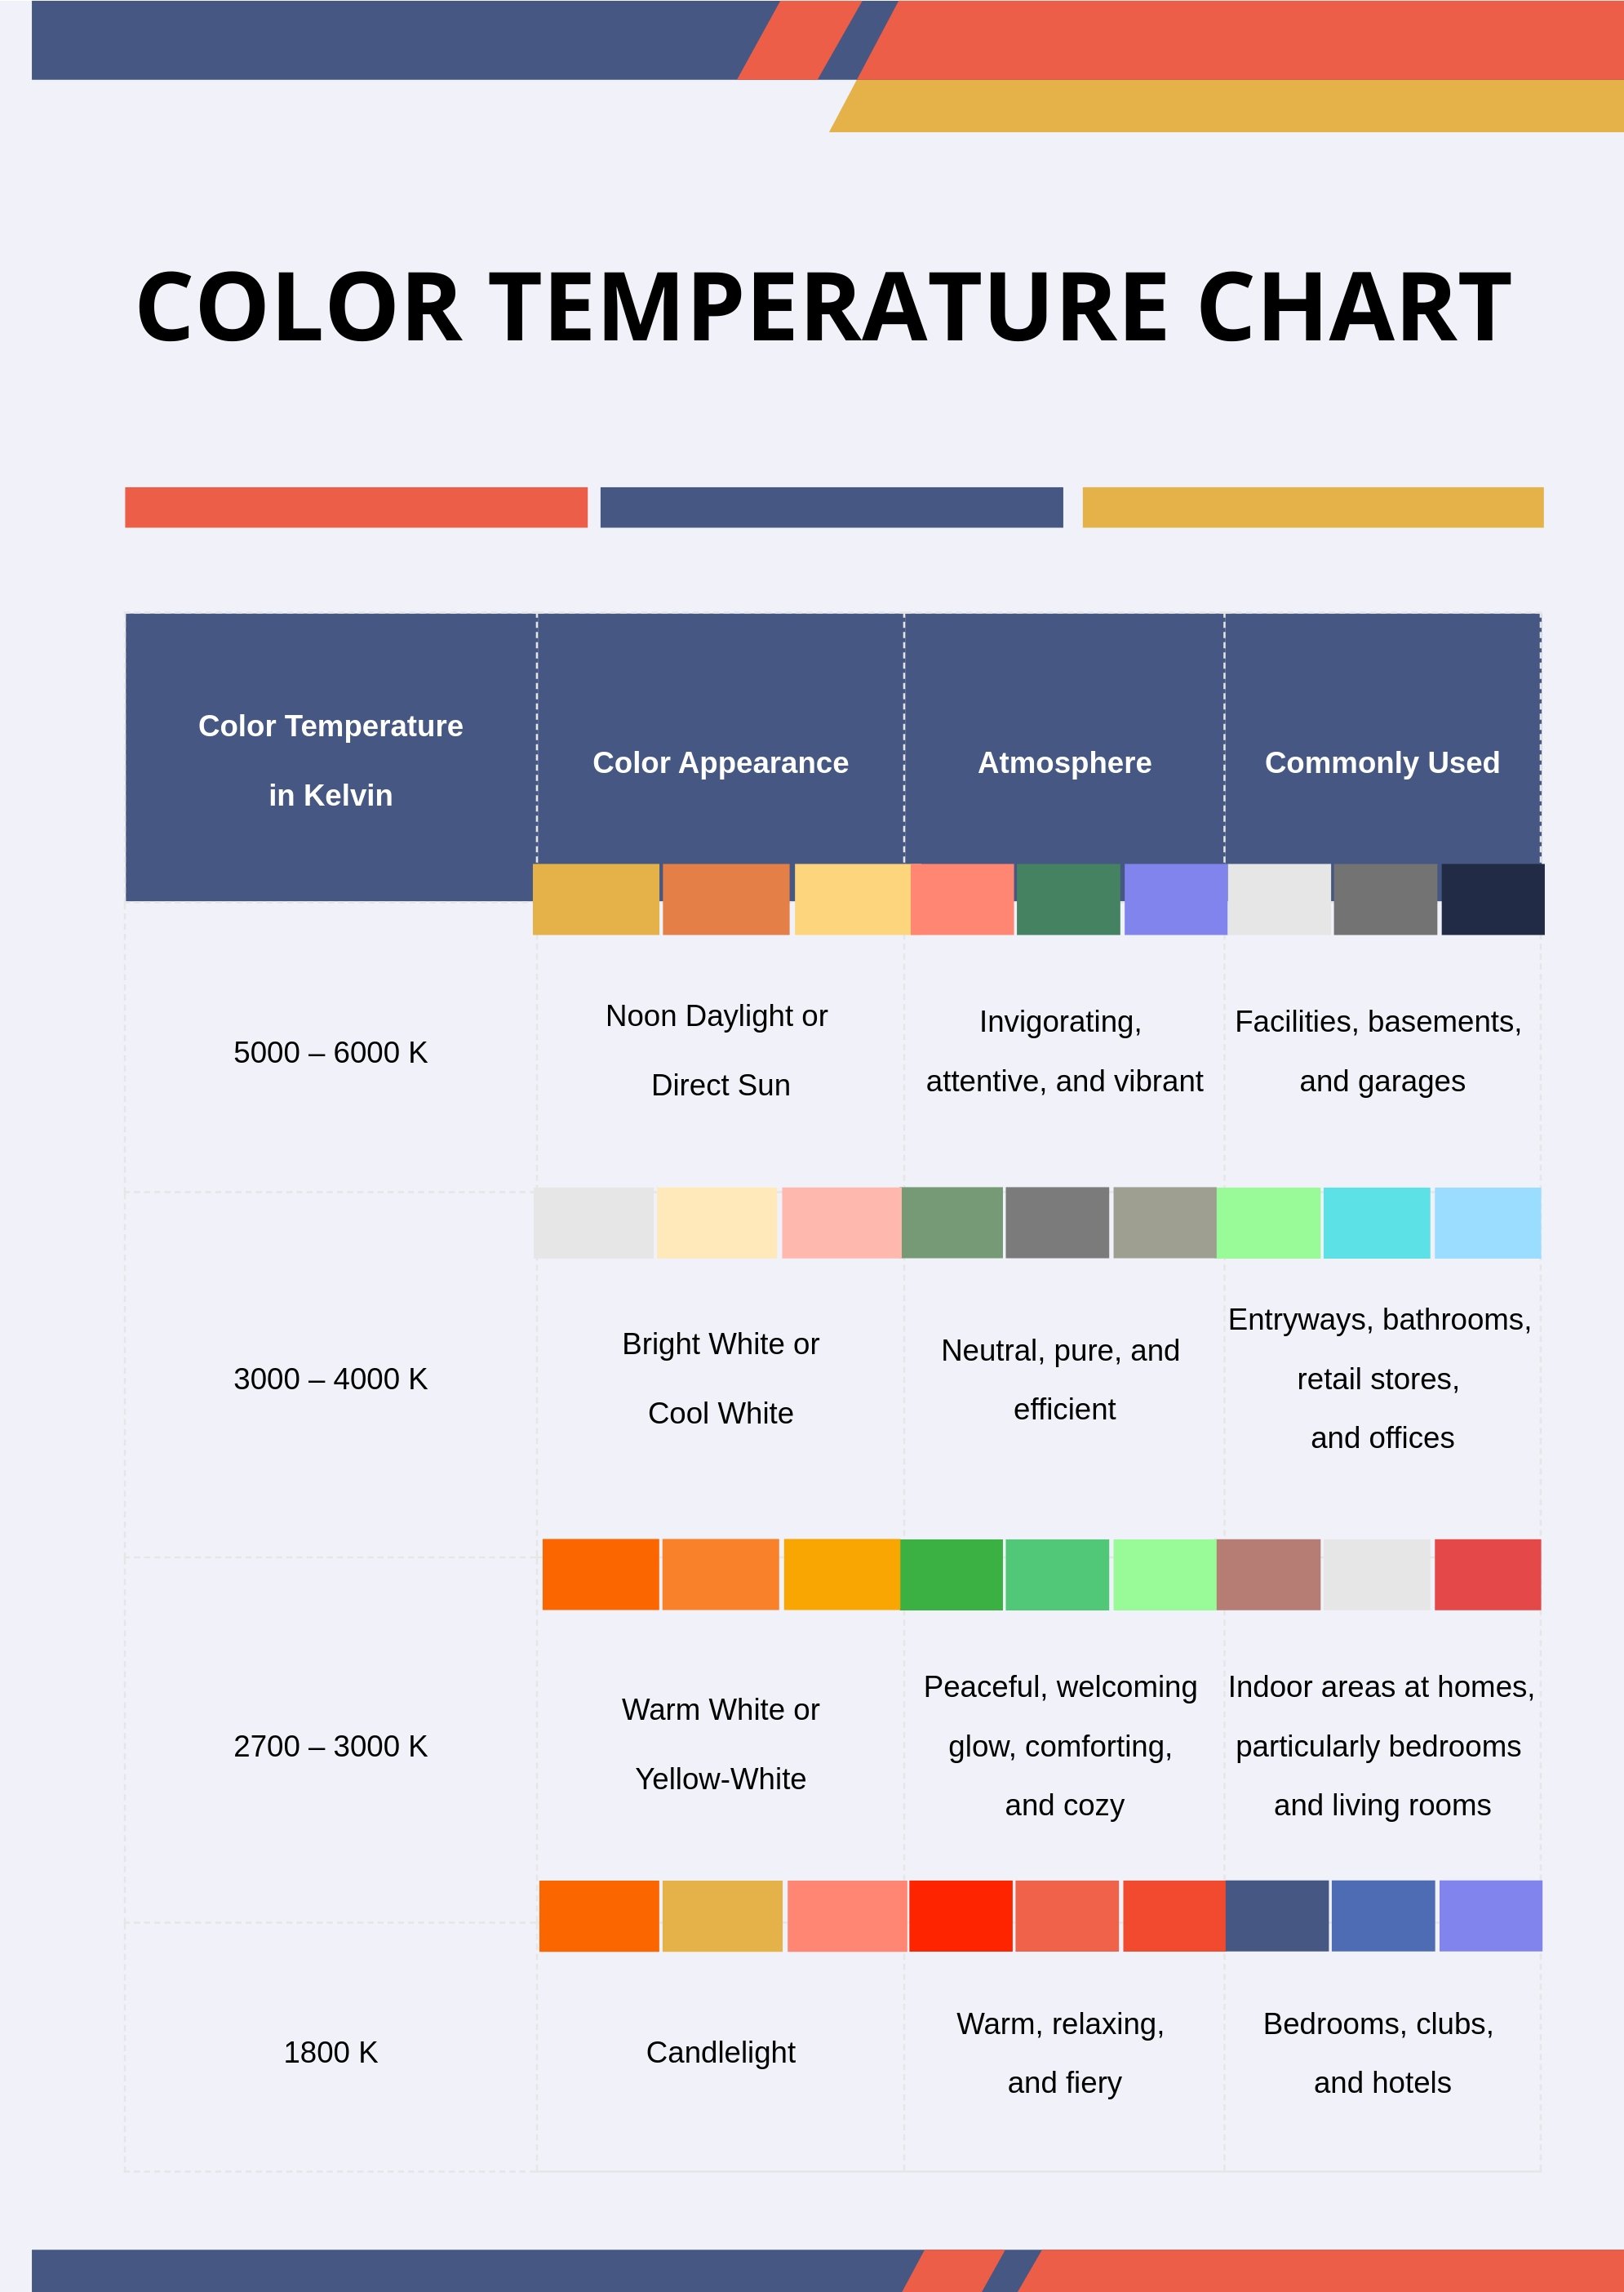 Color Temperature Chart in PDF, Illustrator